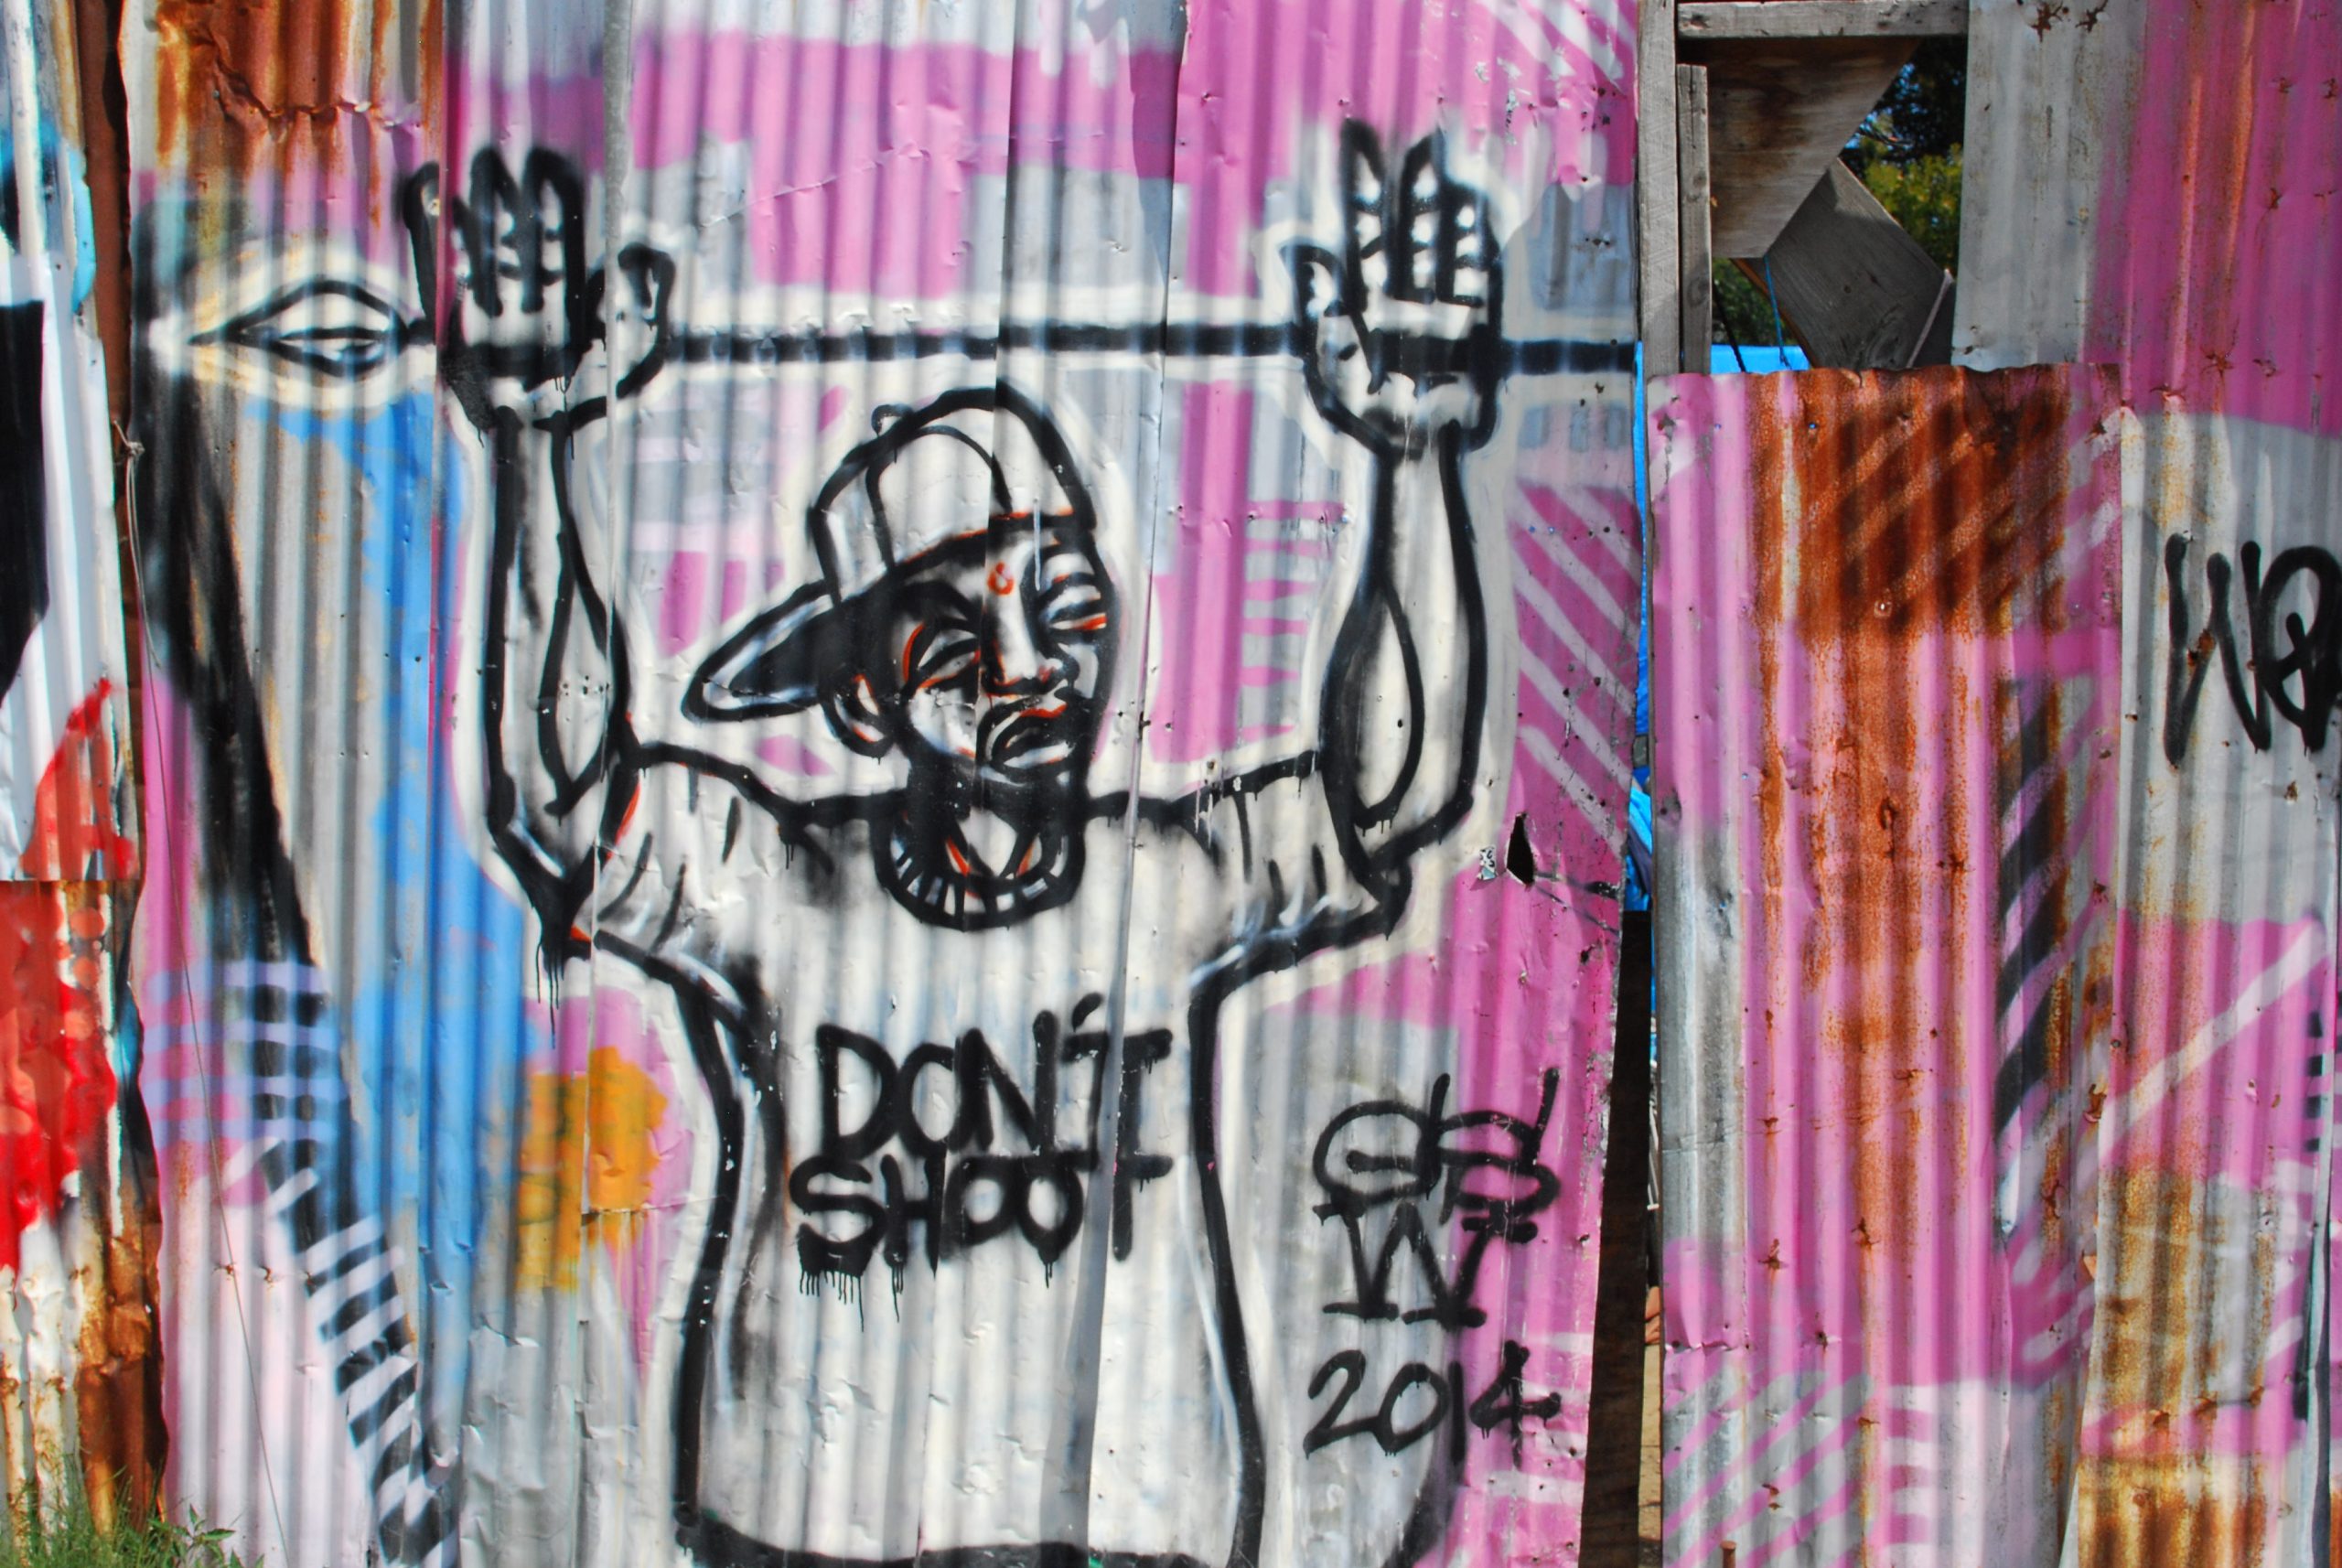 Graffiti in West Oakland in 2016. Photo by Scott Morris.